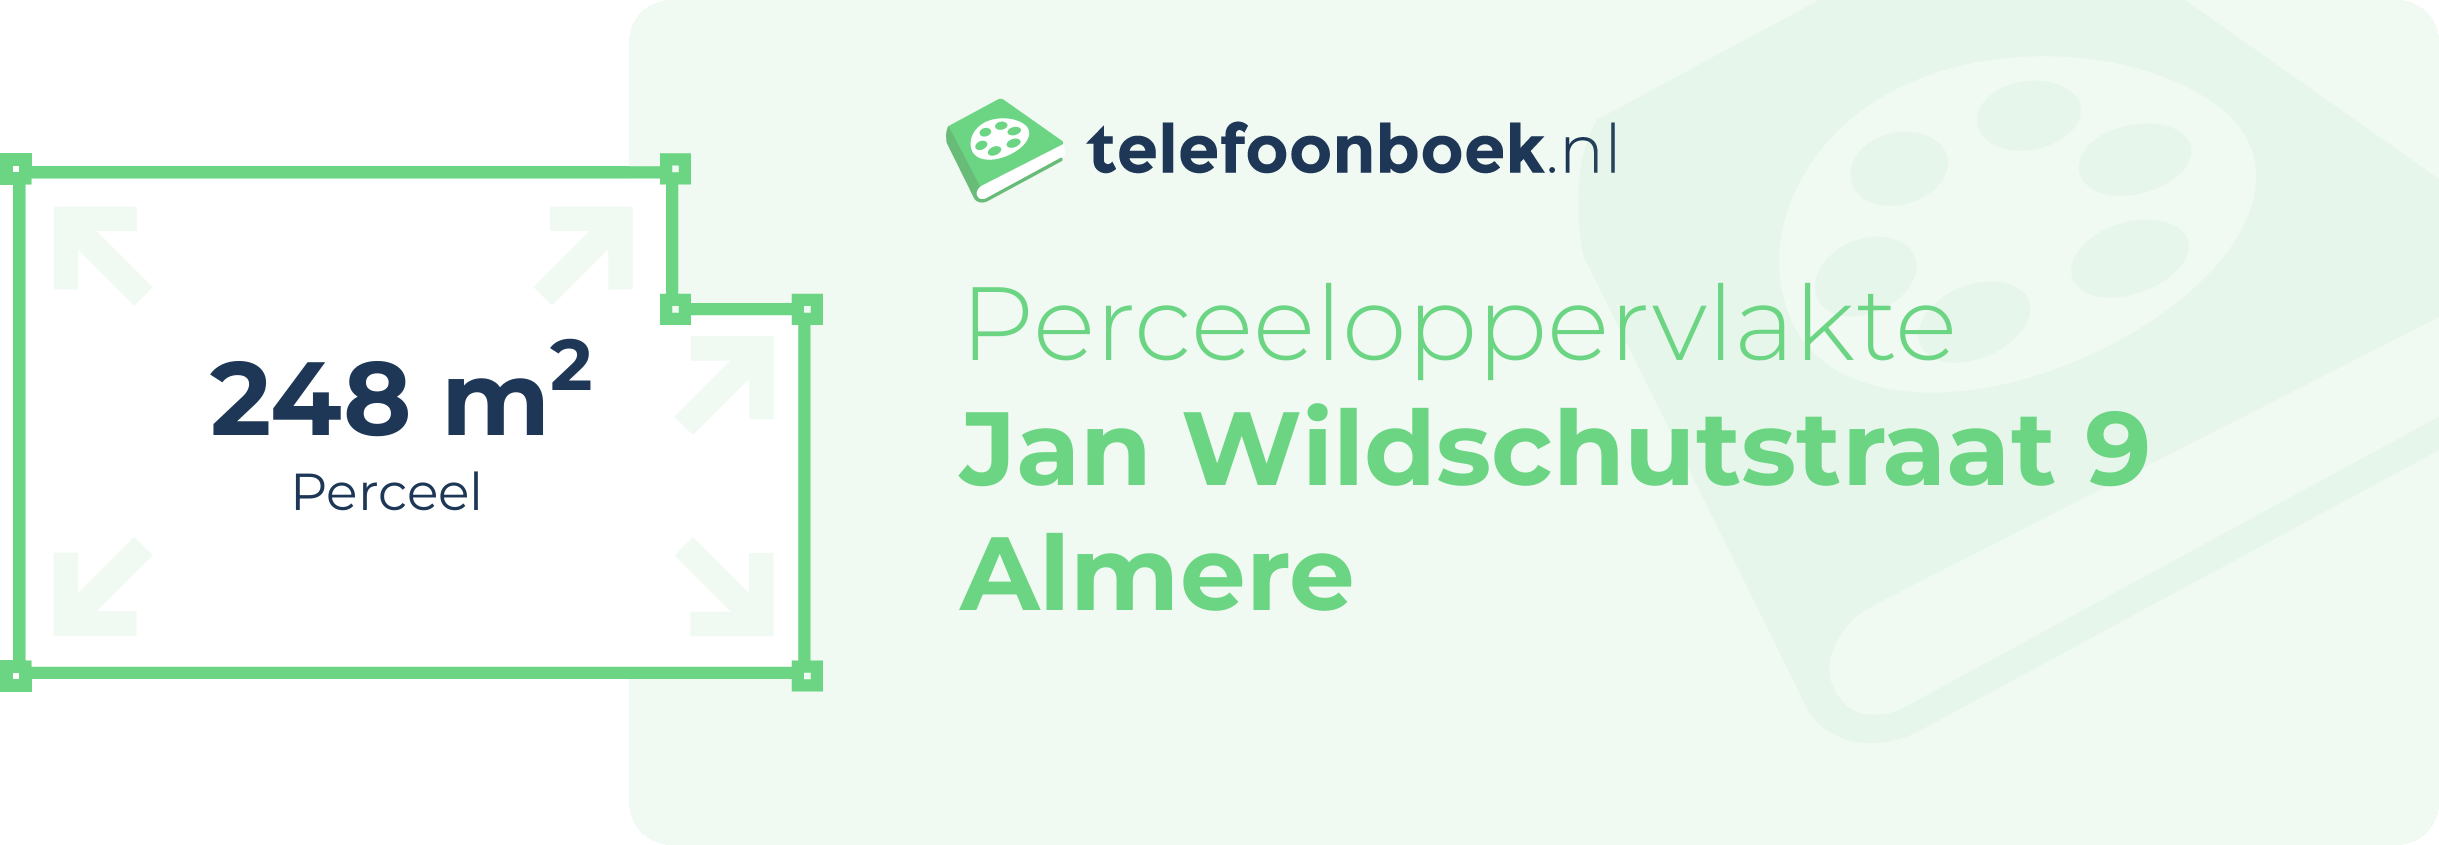 Perceeloppervlakte Jan Wildschutstraat 9 Almere